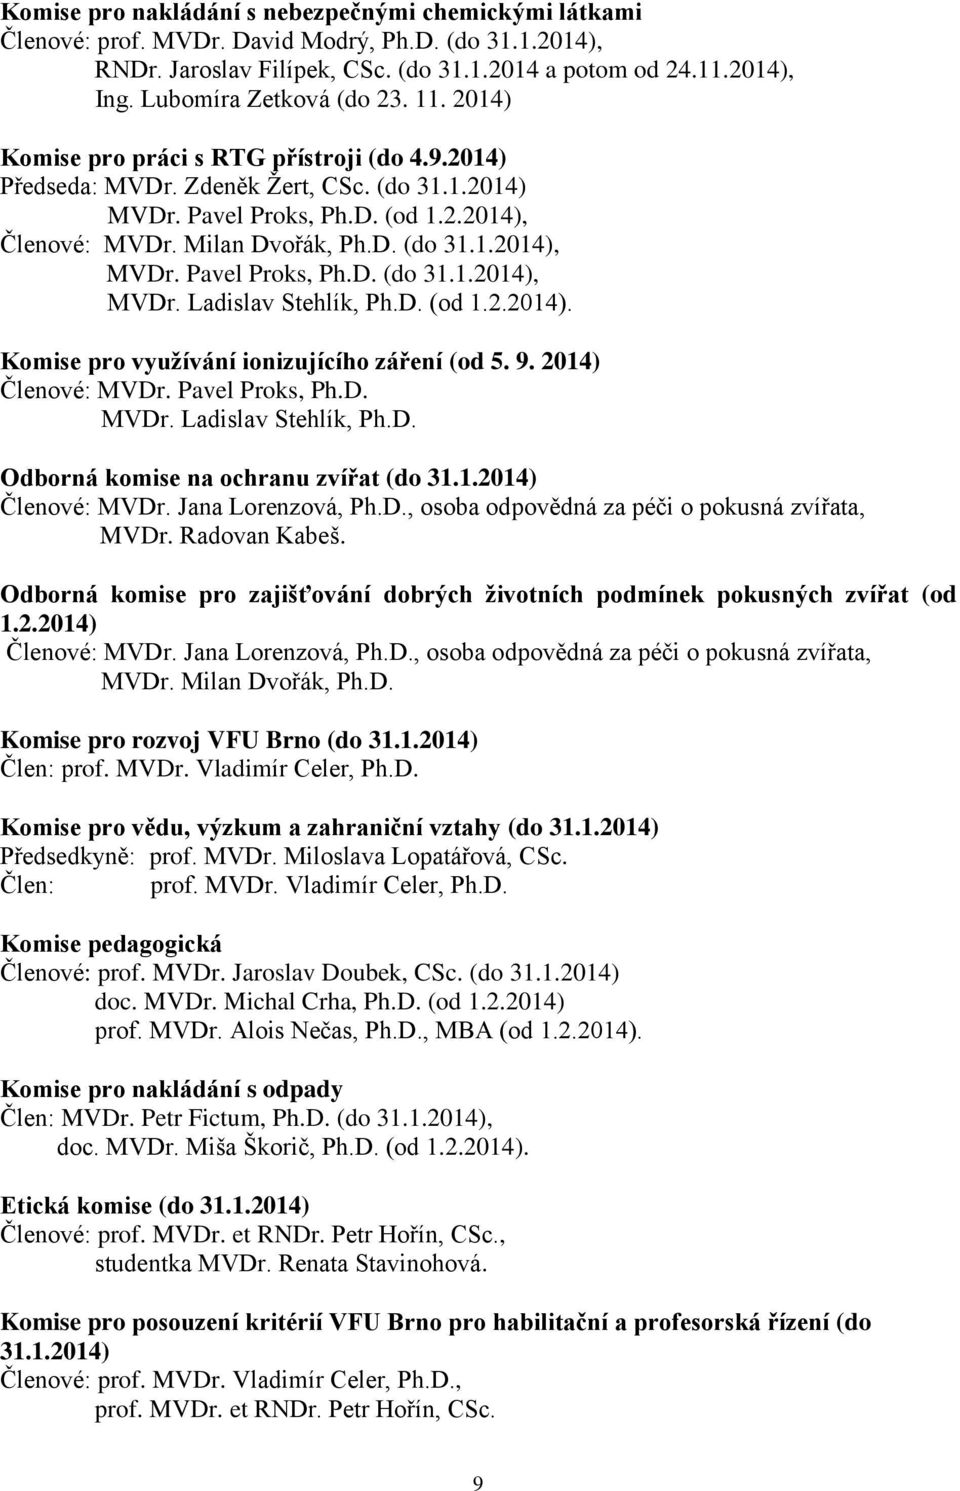 Milan Dvořák, Ph.D. (do 31.1.2014), MVDr. Pavel Proks, Ph.D. (do 31.1.2014), MVDr. Ladislav Stehlík, Ph.D. (od 1.2.2014). Komise pro využívání ionizujícího záření (od 5. 9. 2014) Členové: MVDr.